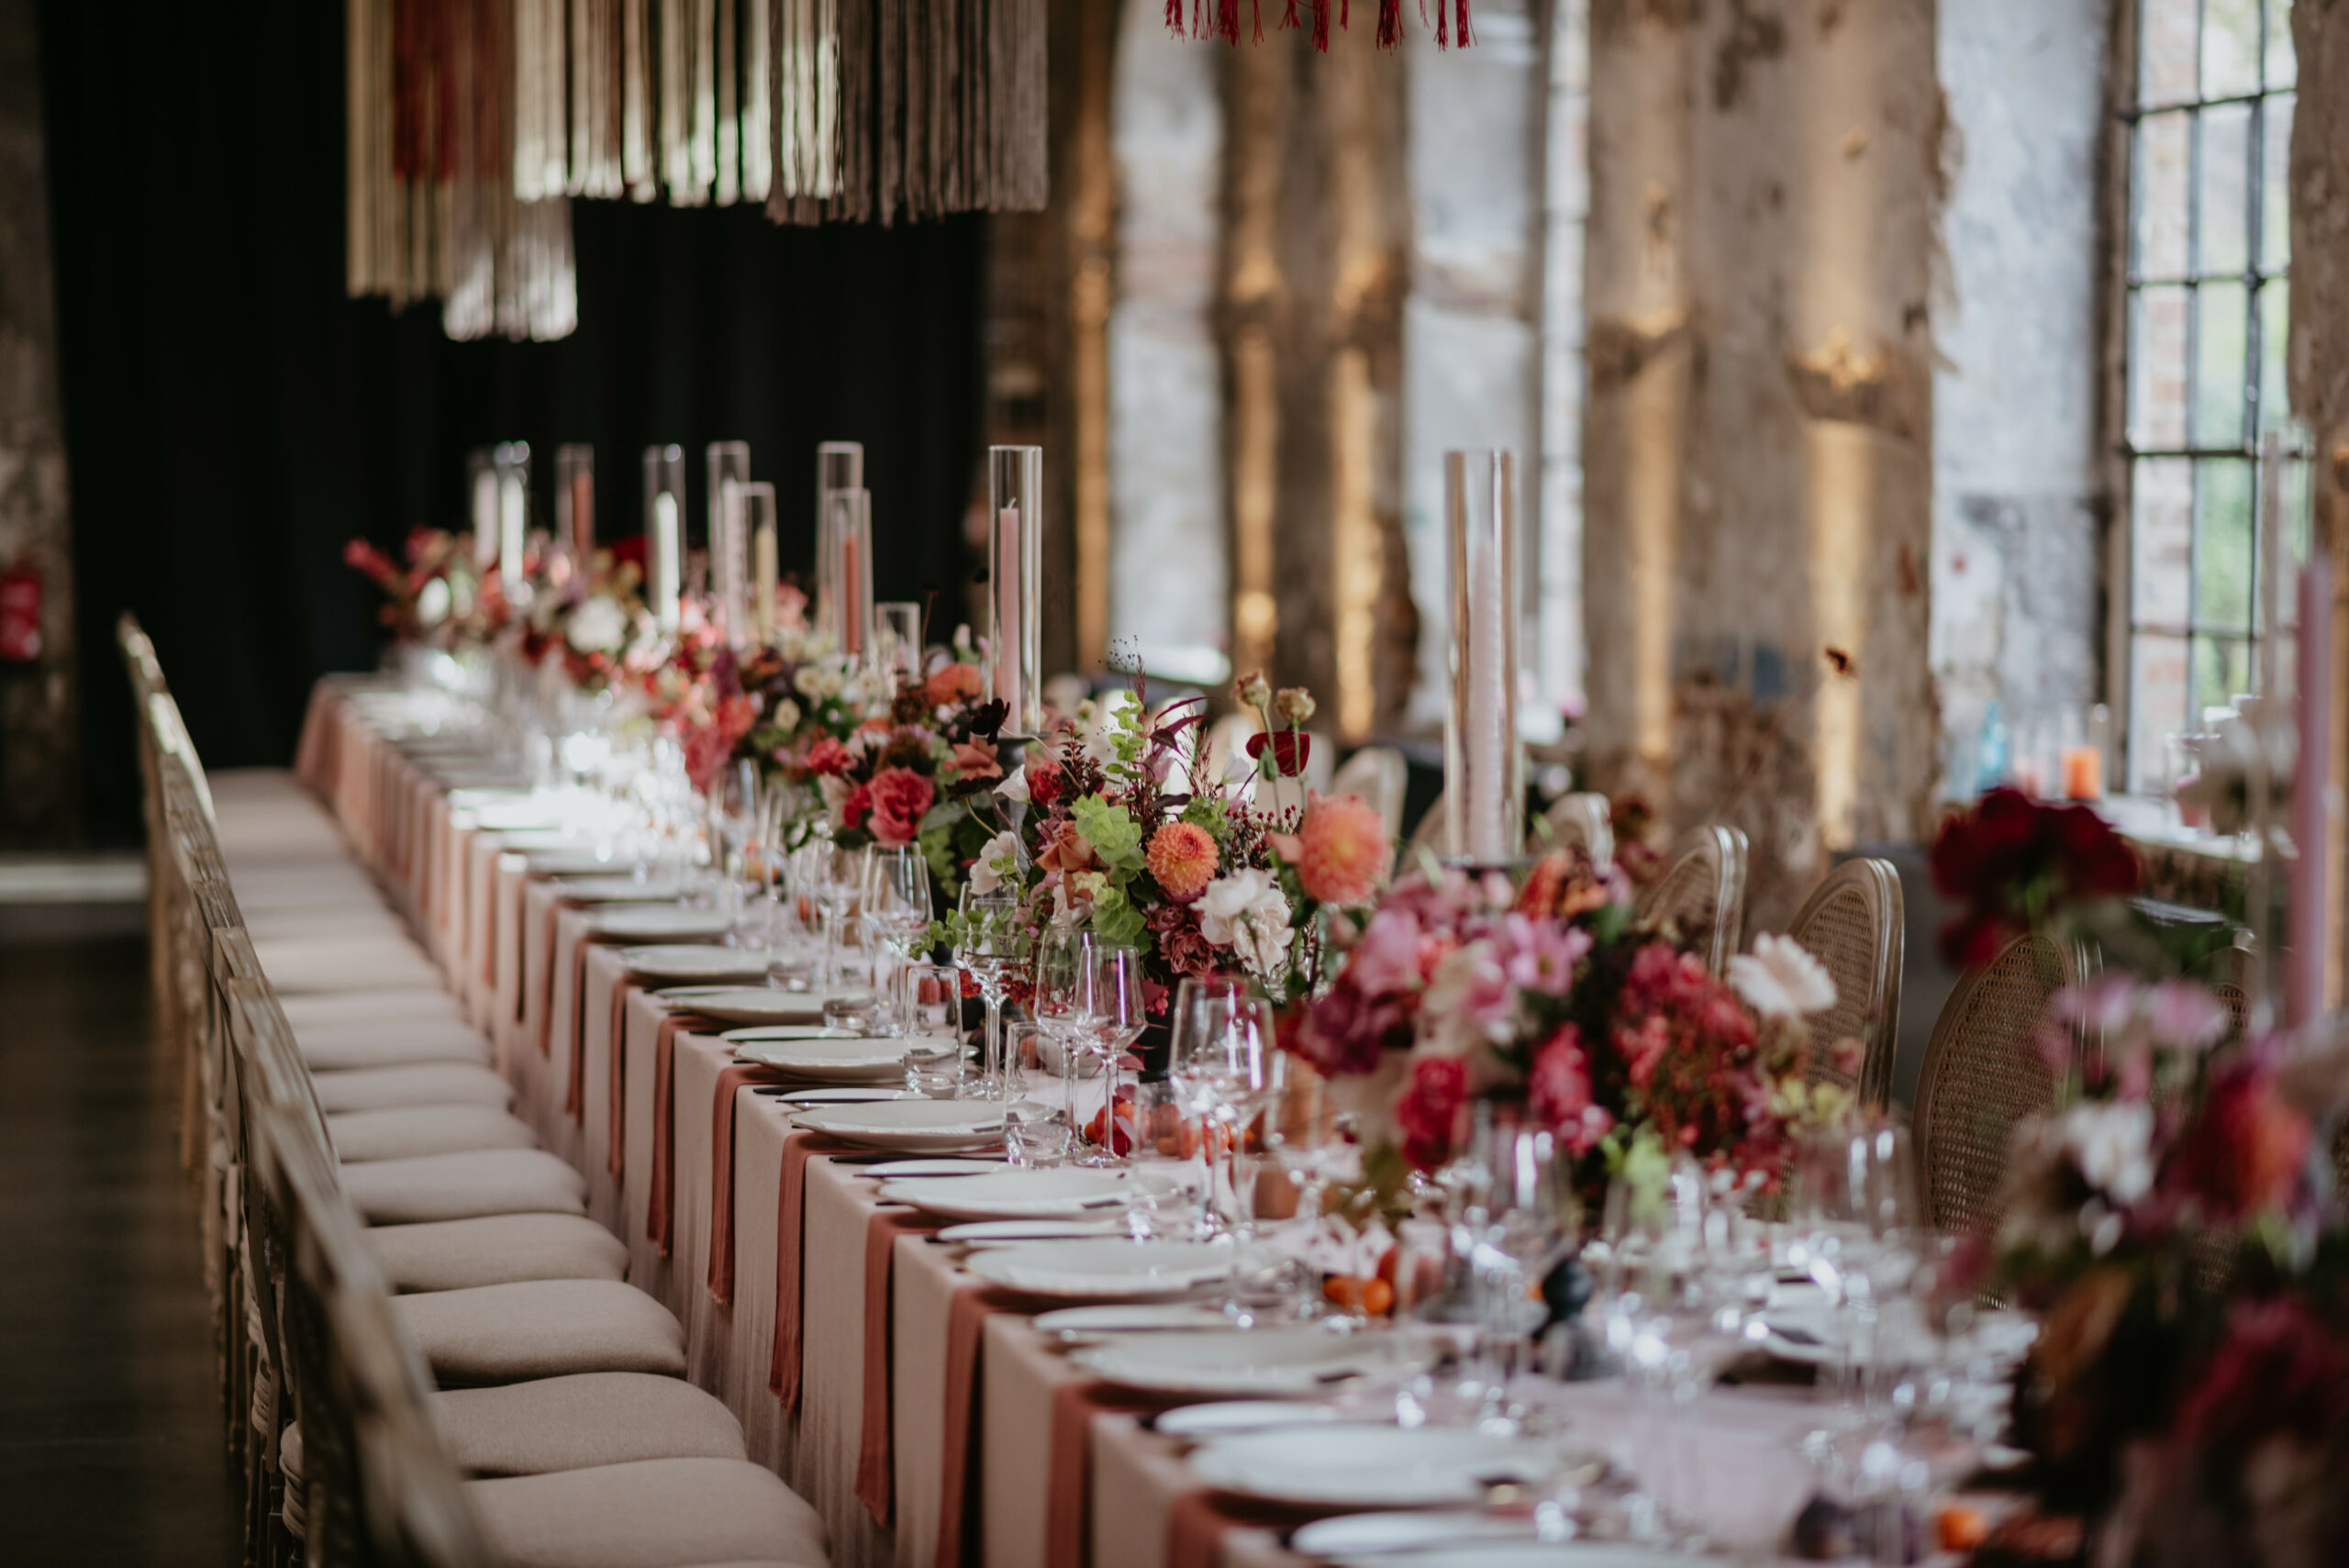 Elegante Hochzeitstafel mit Blumendekoration und Kerzenständern von einem Hochzeitsplaner in Köln arrangiert, perfekt für eine stilvolle Hochzeitsfeier.